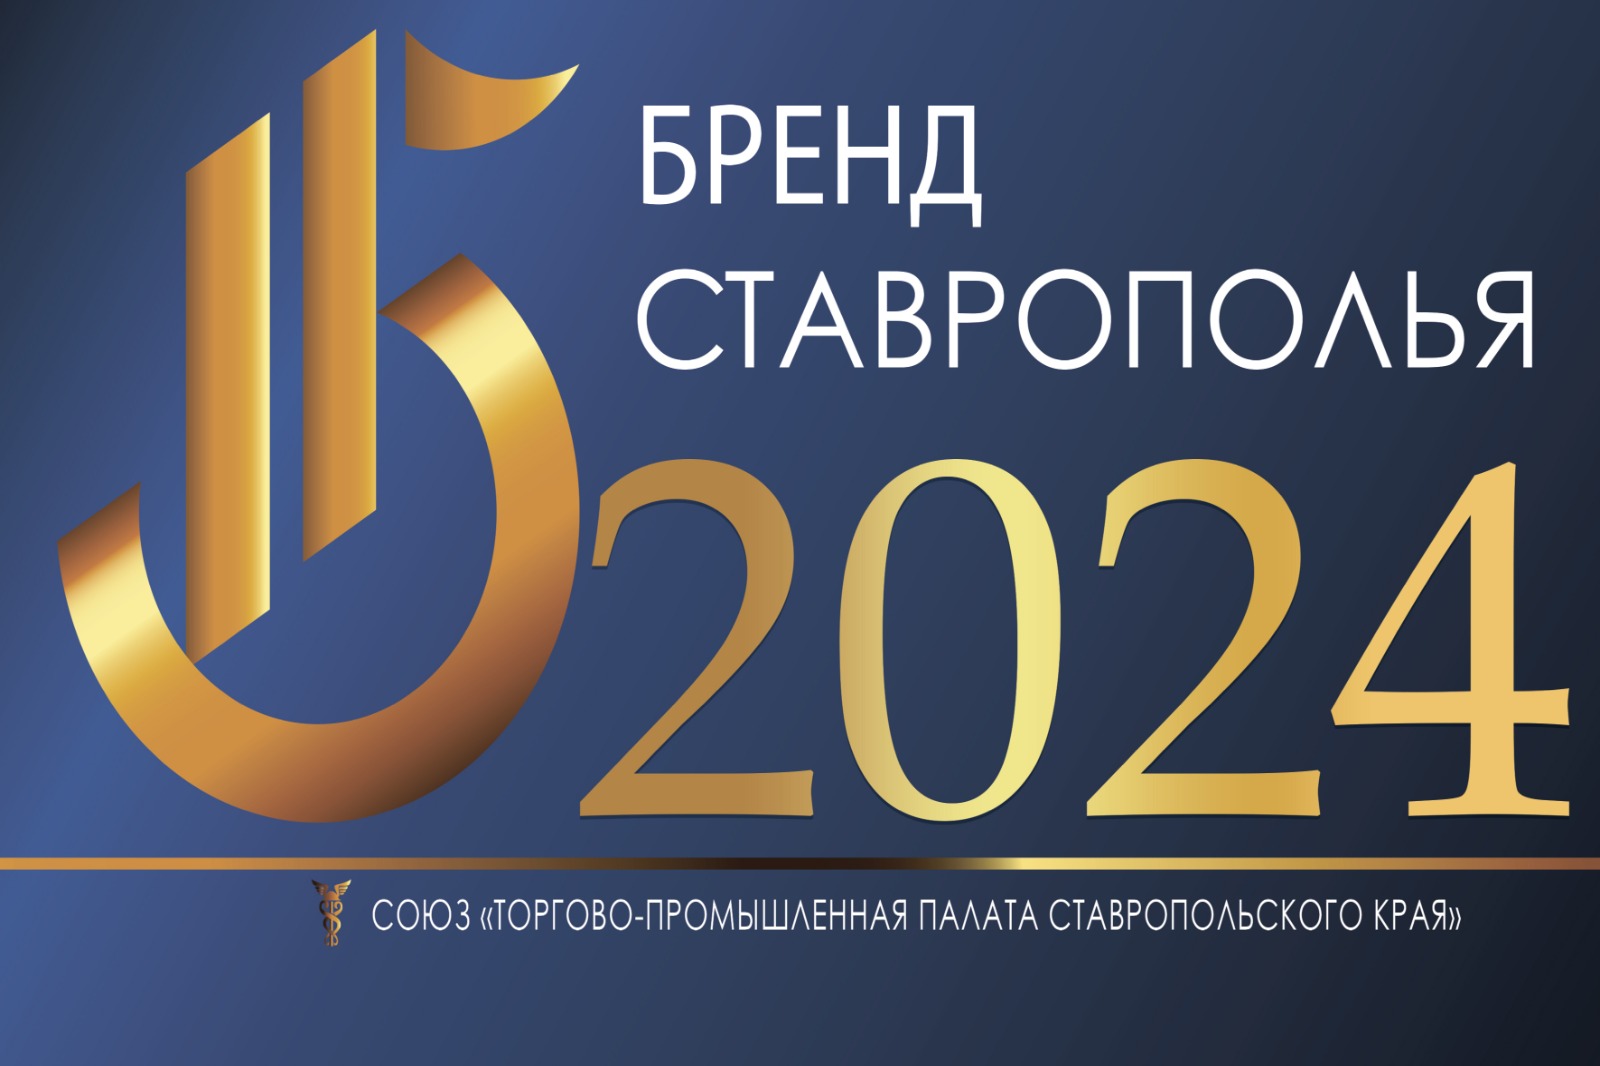 В Ставропольском крае пройдет XII ежегодный конкурс «Бренд Ставрополья».